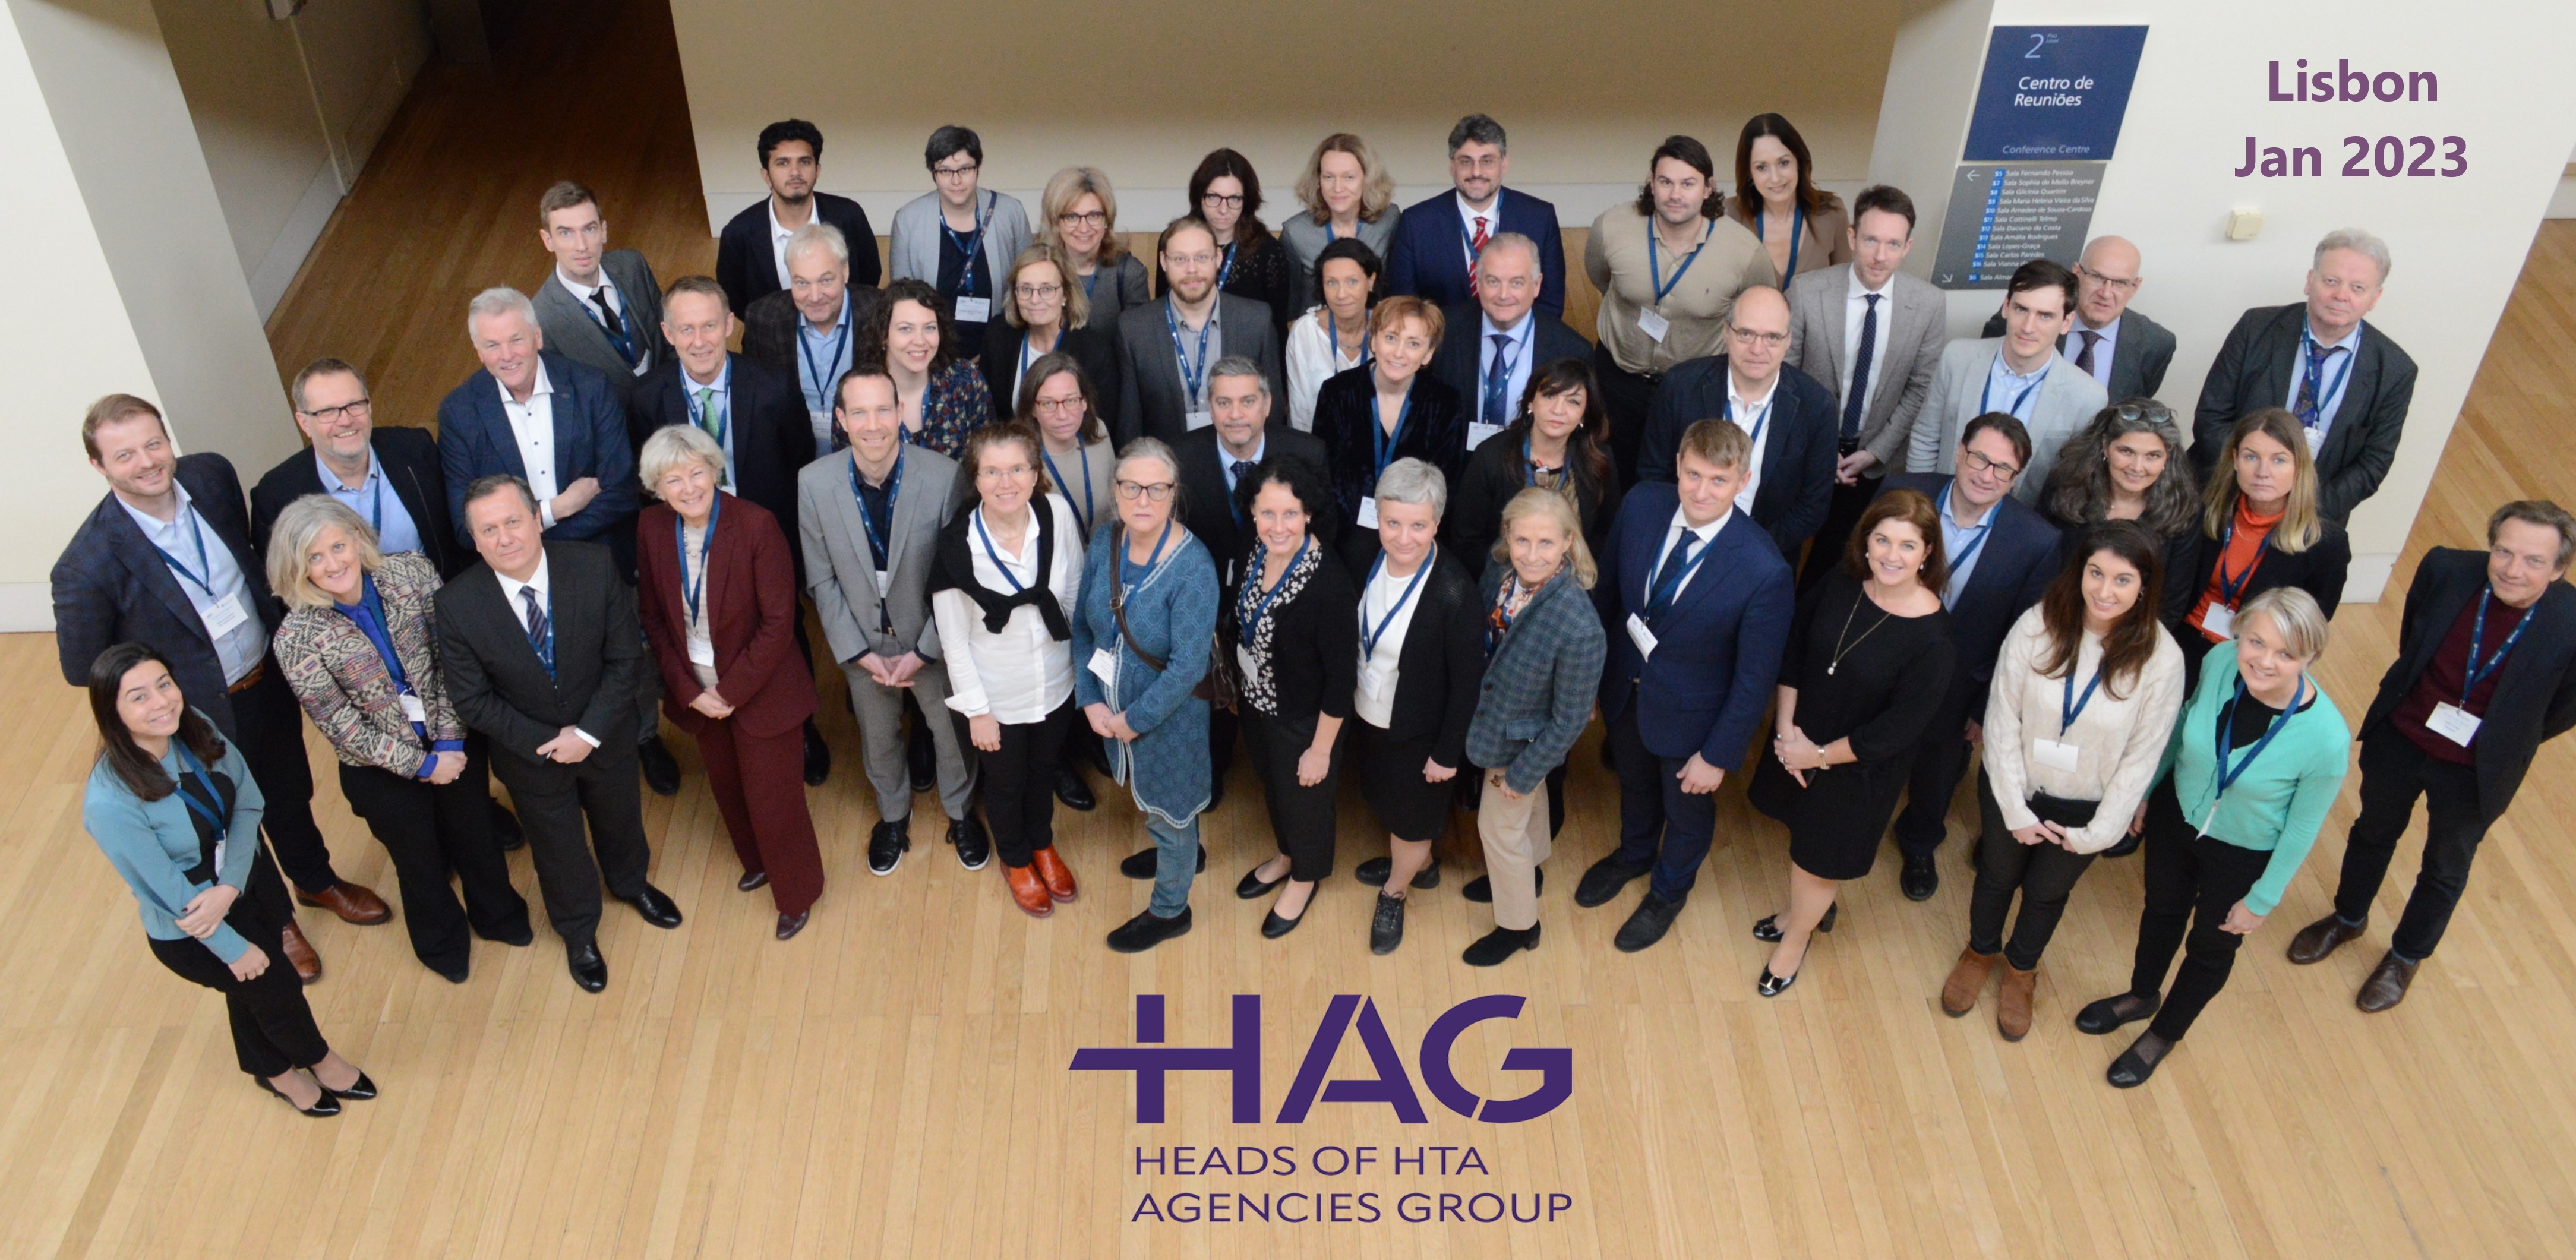 Foto da reunião dos membros do HAG em Lisboa em janeiro de 2023